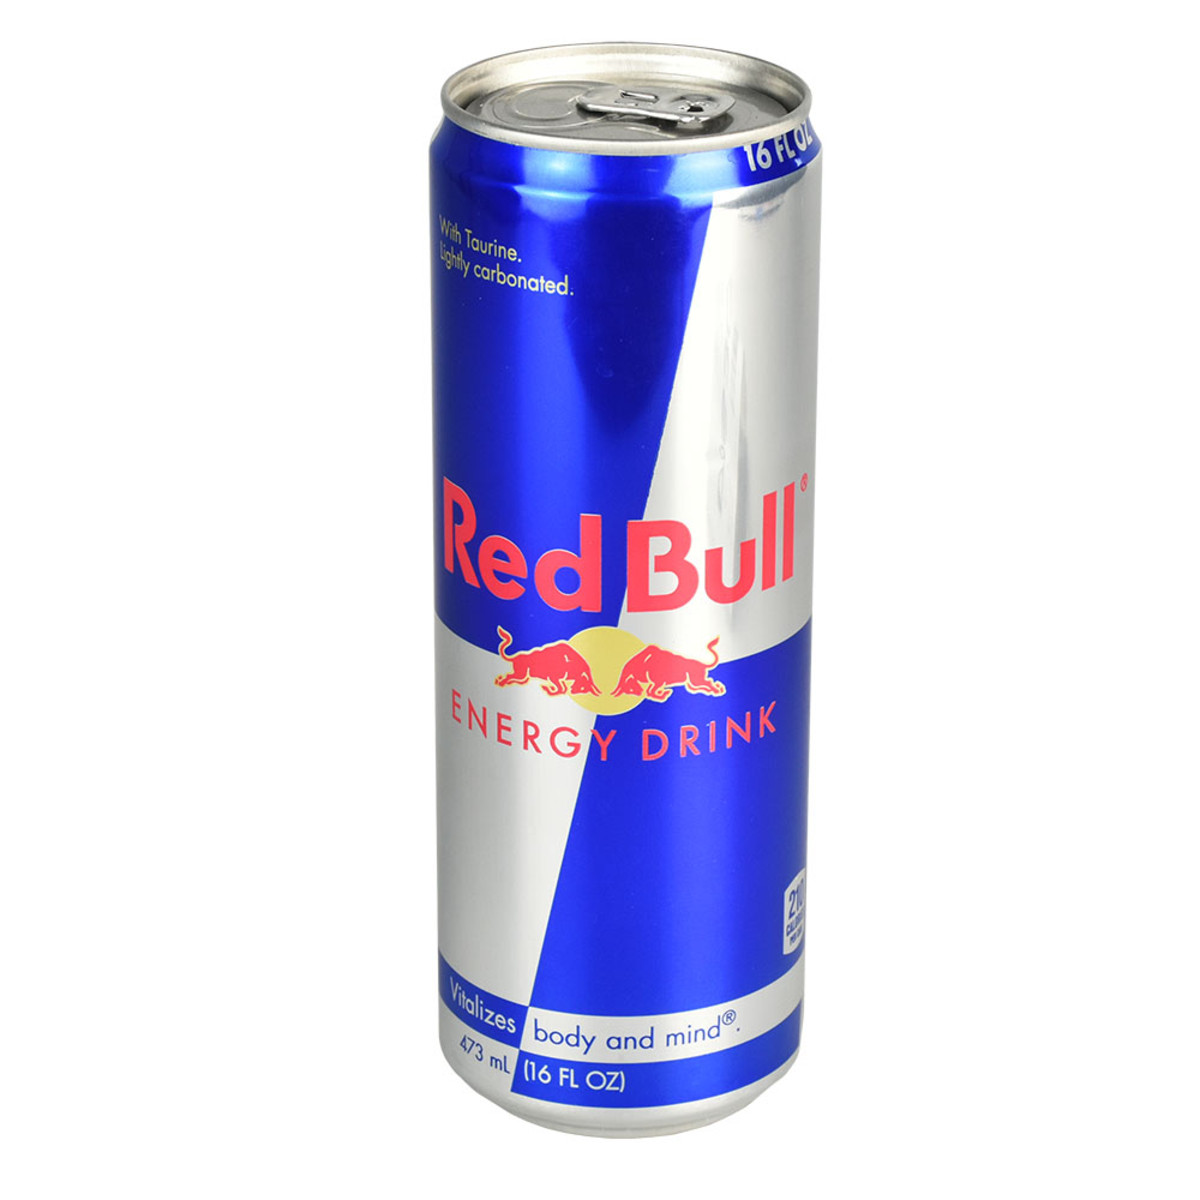 Red Bull Energy Drink Diversion Stash Safe